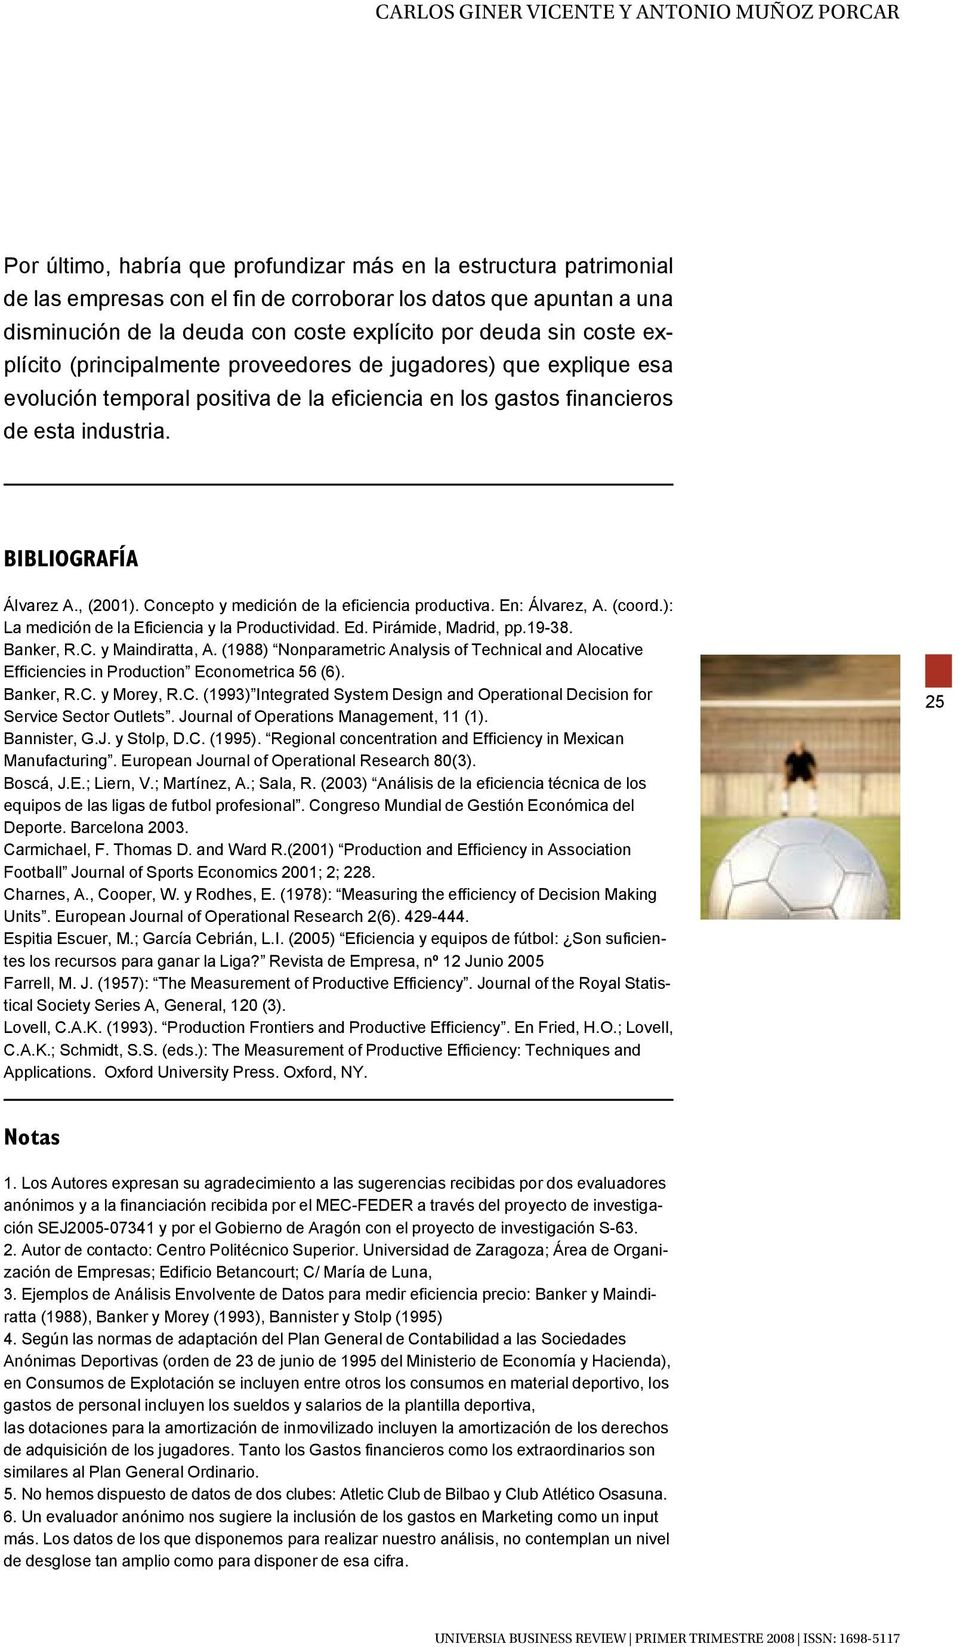 industria. BIBLIOGRAFÍA Álvarez A., (2001). Concepto y medición de la eficiencia productiva. En: Álvarez, A. (coord.): La medición de la Eficiencia y la Productividad. Ed. Pirámide, Madrid, pp.19-38.